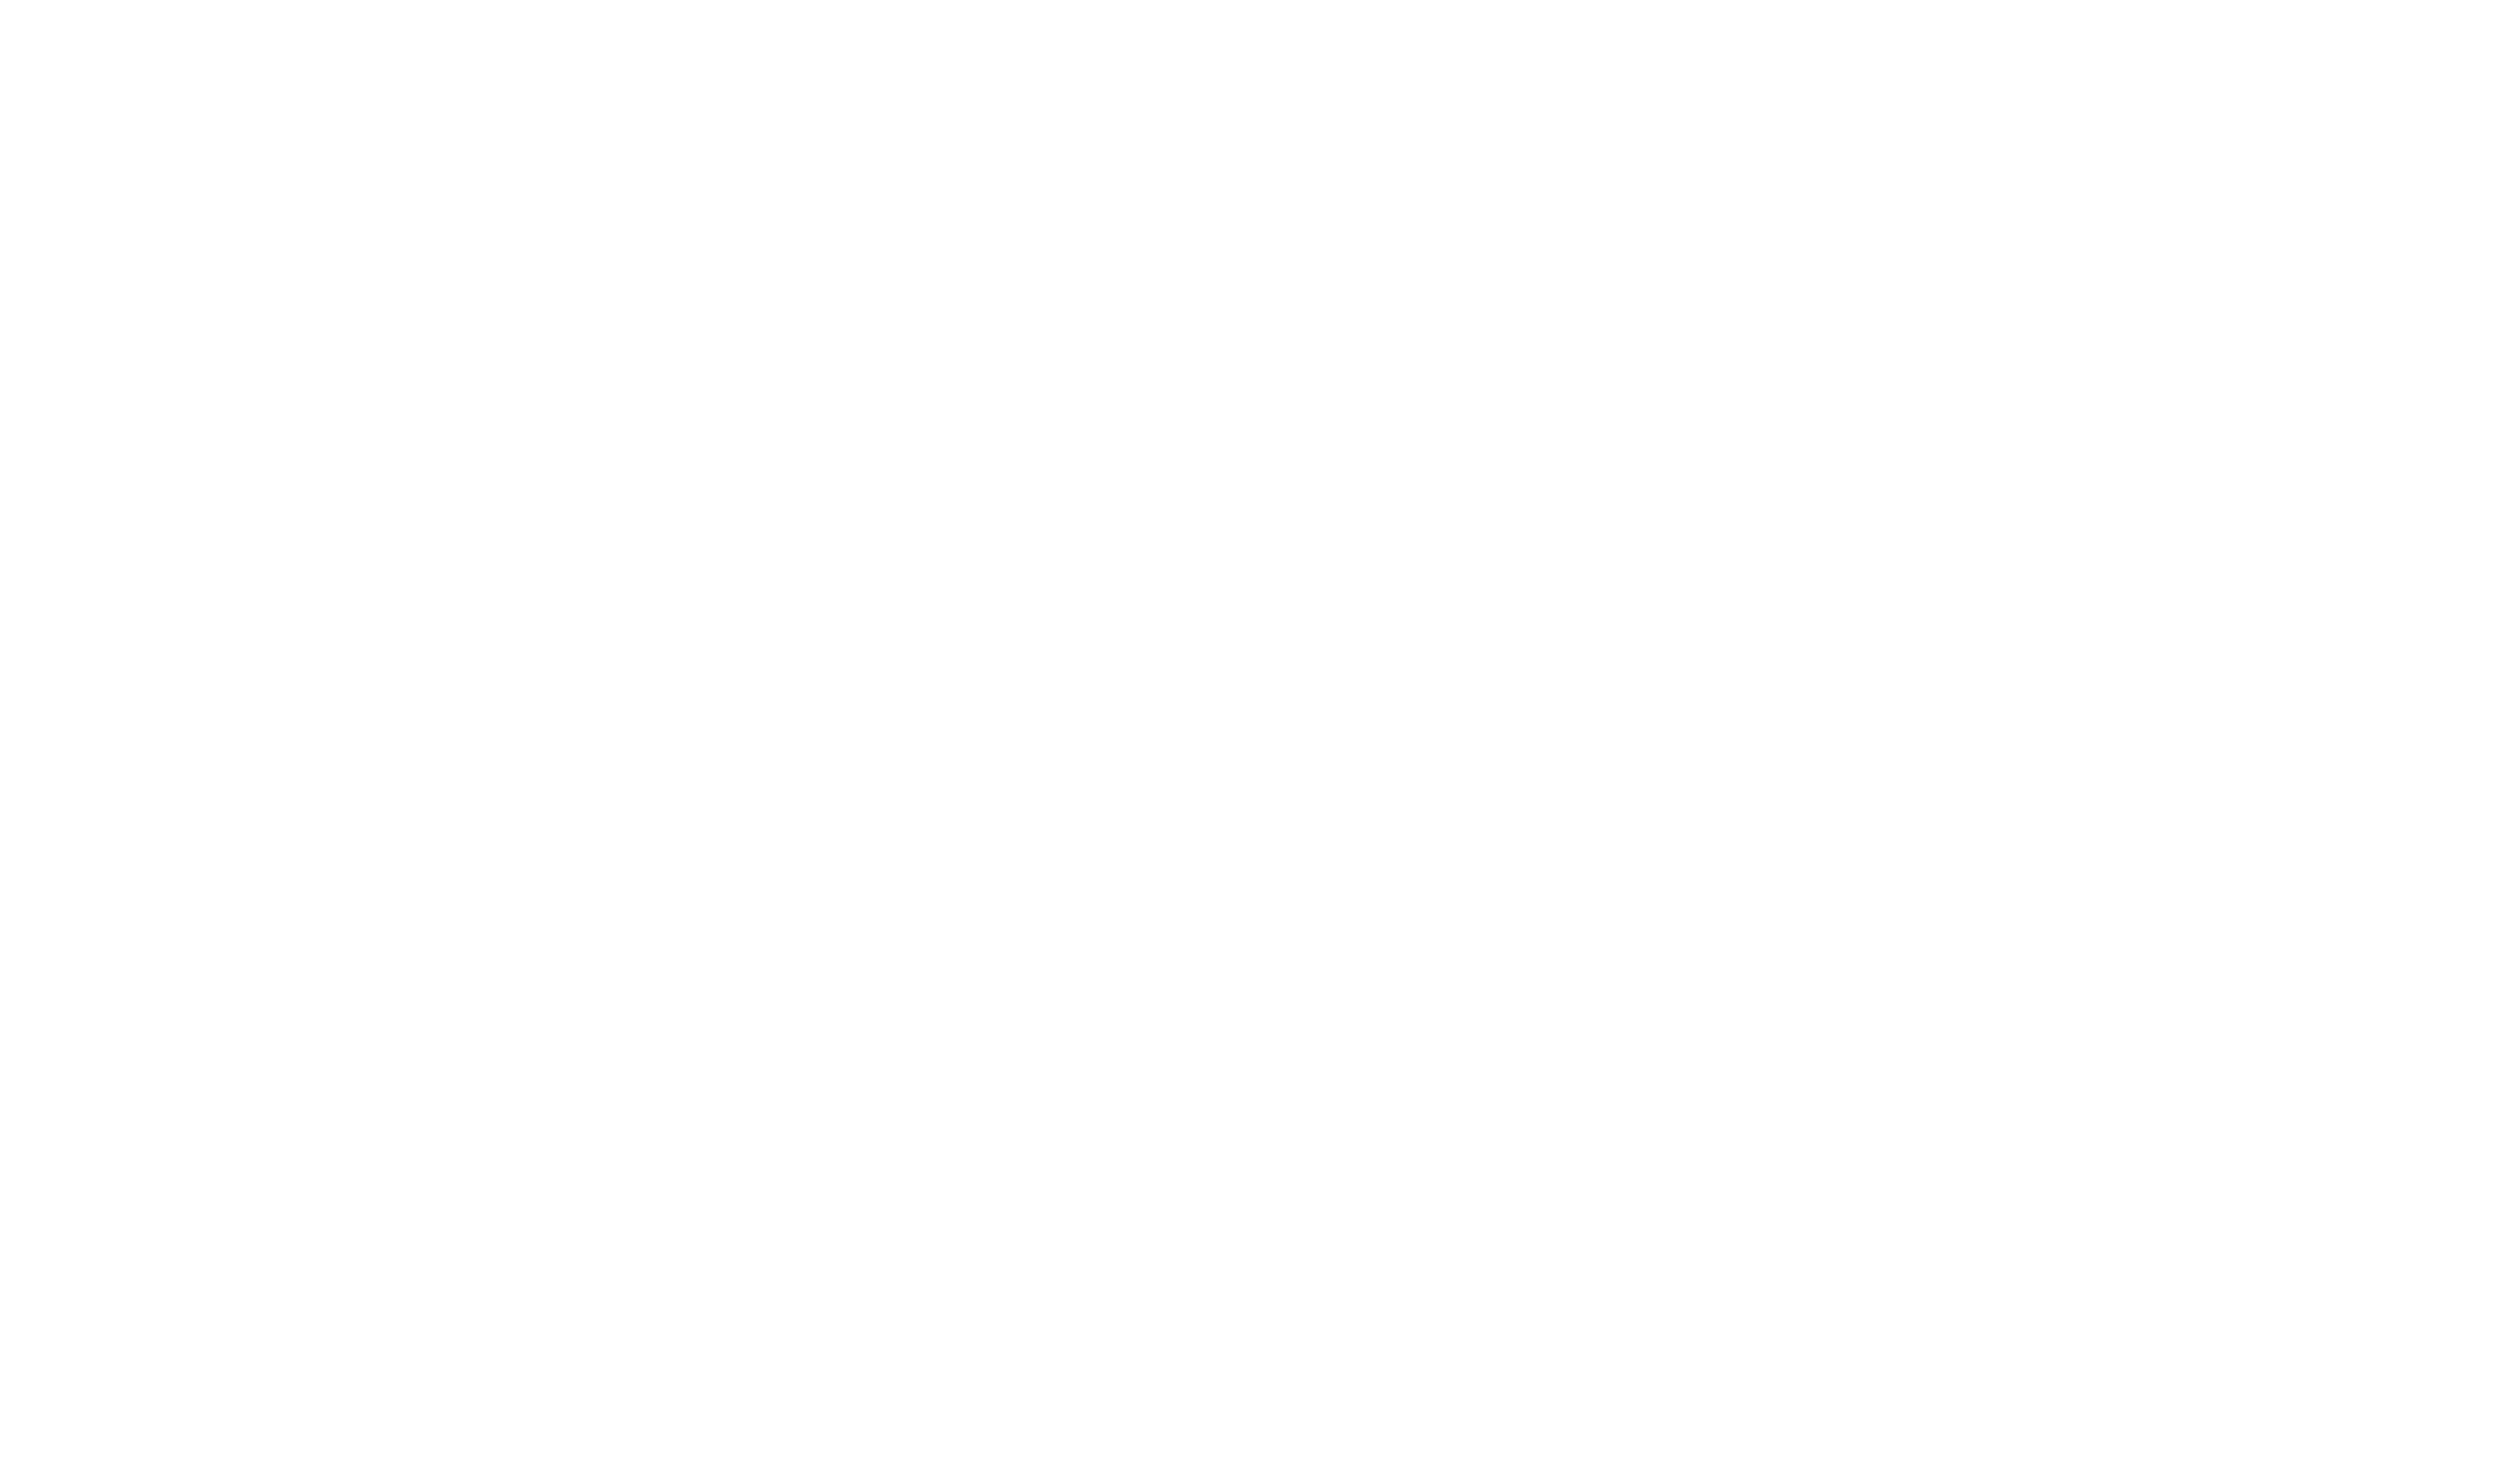 Planeta Net Telecom